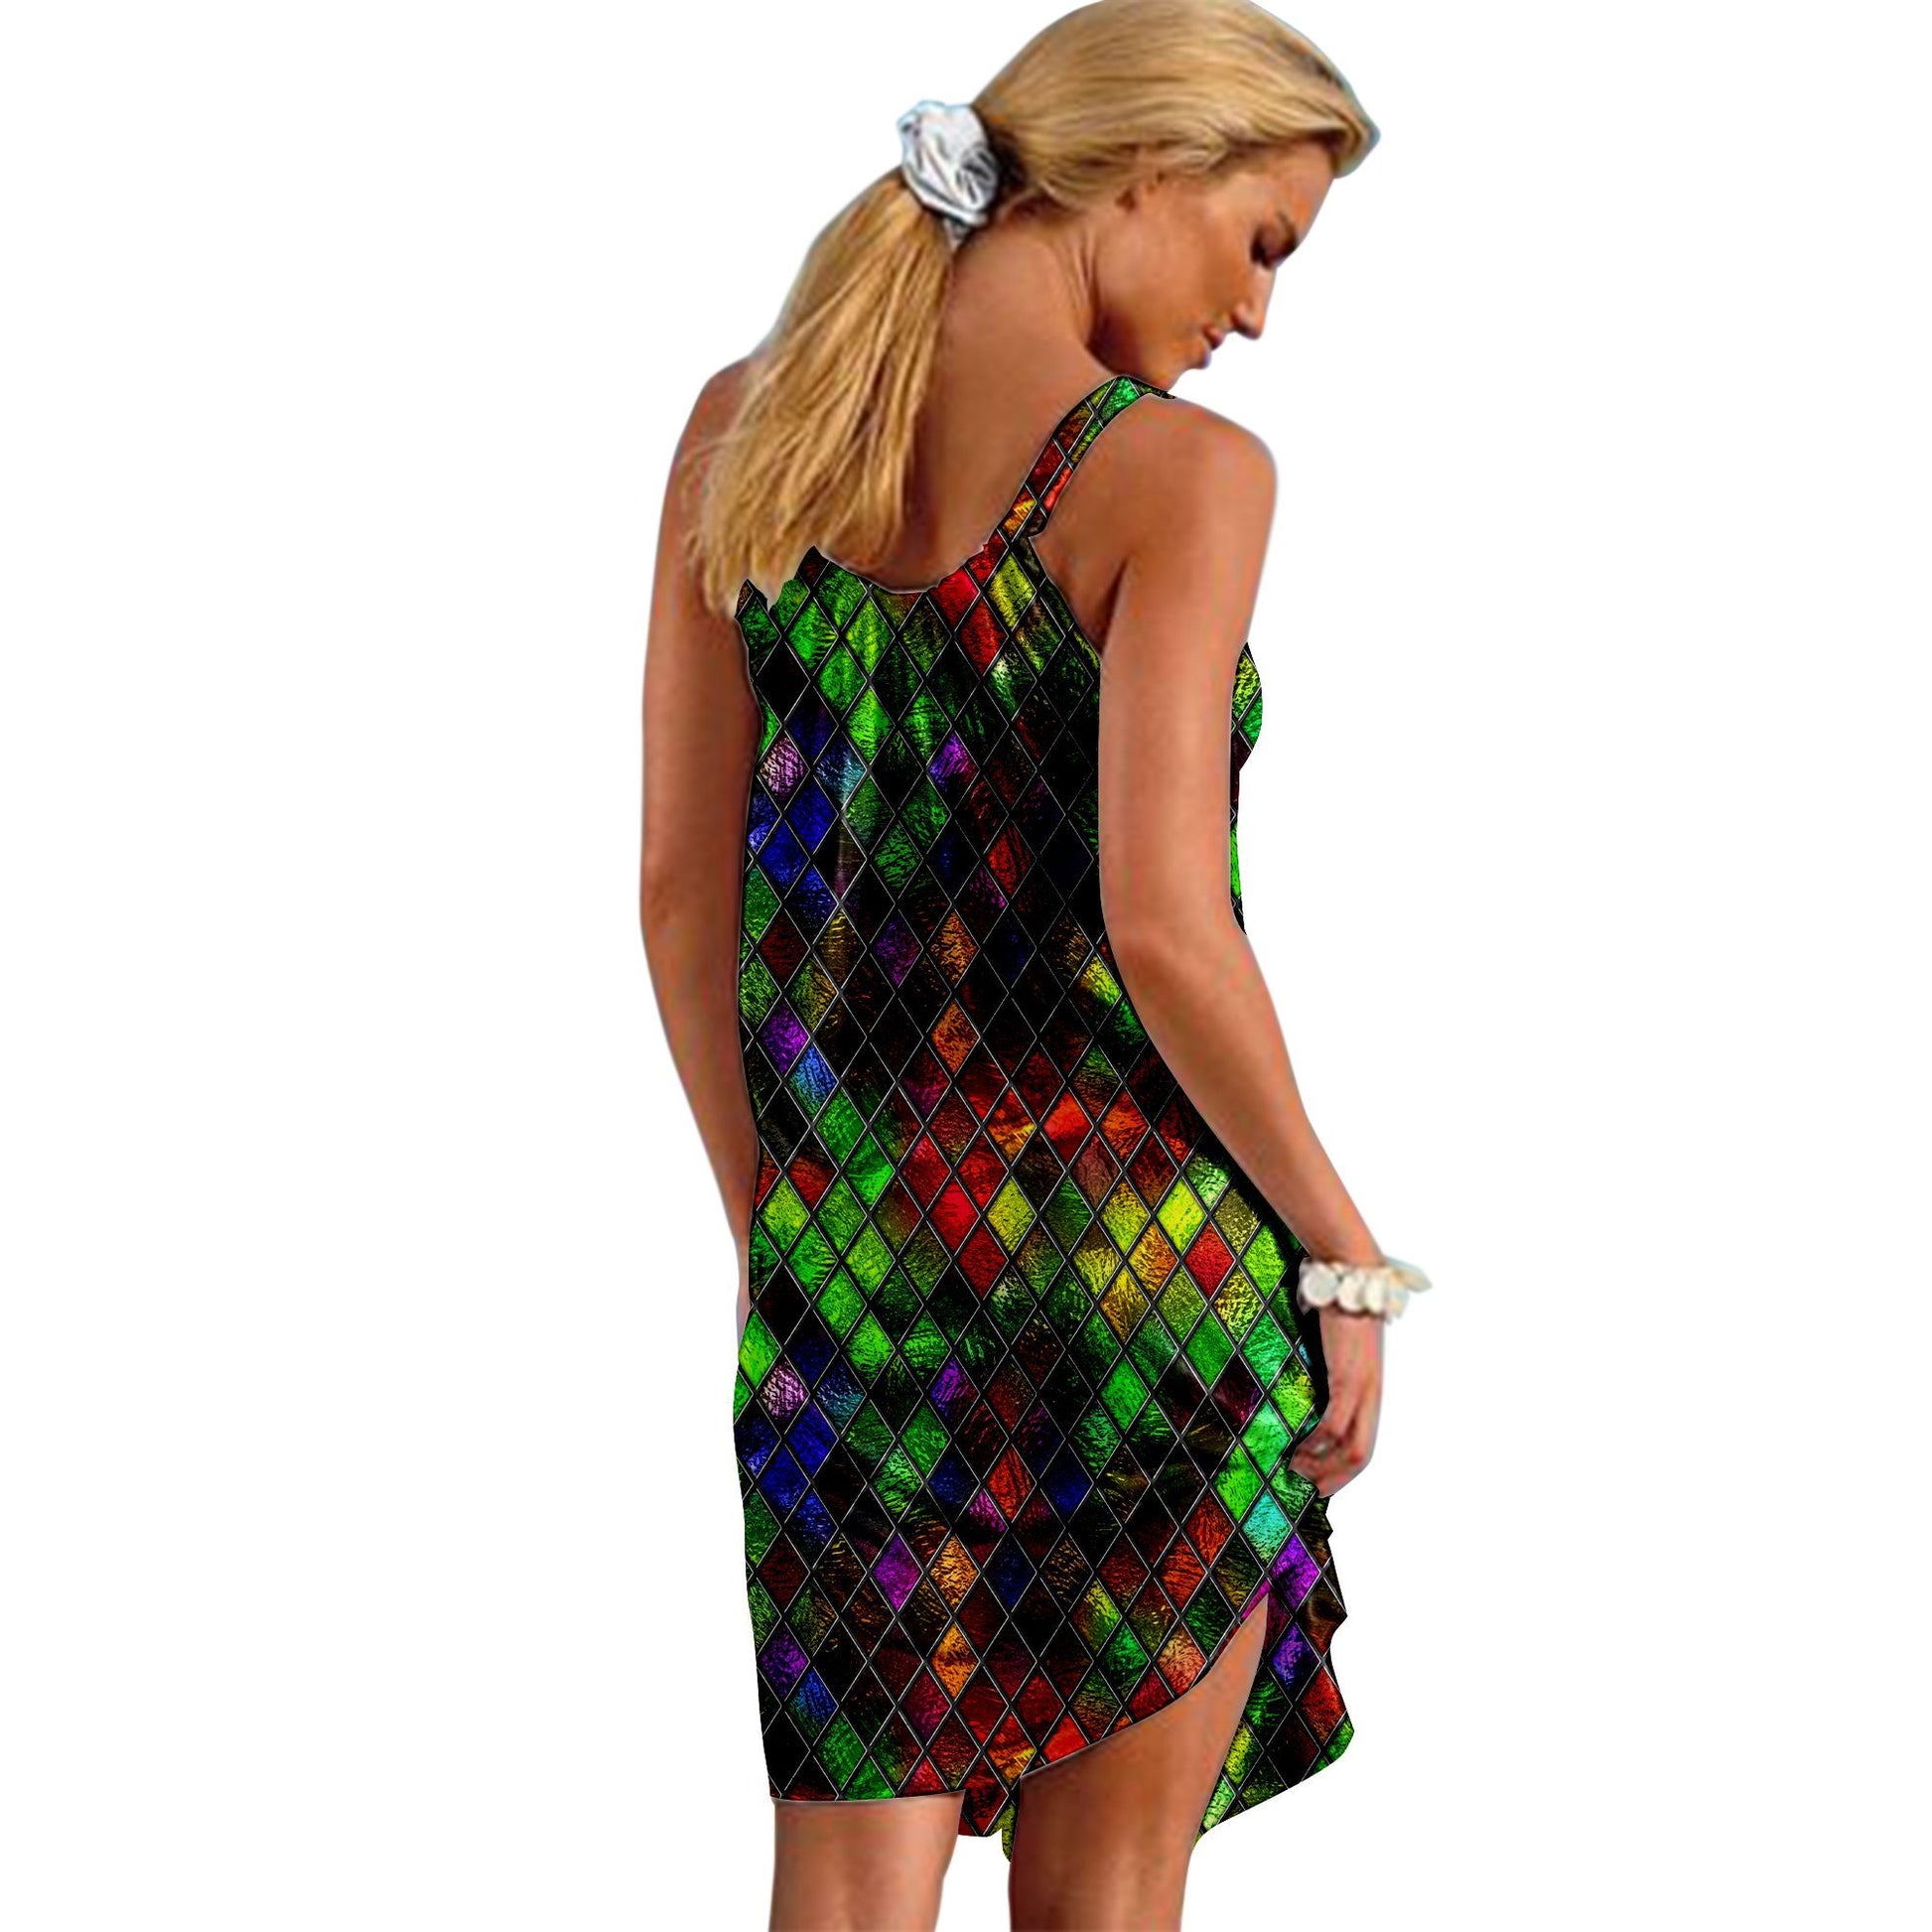 Gearhuman 3D Outstanding Stained Glass Sleeveless Beach Dress ZK2306215 Beach Dress 